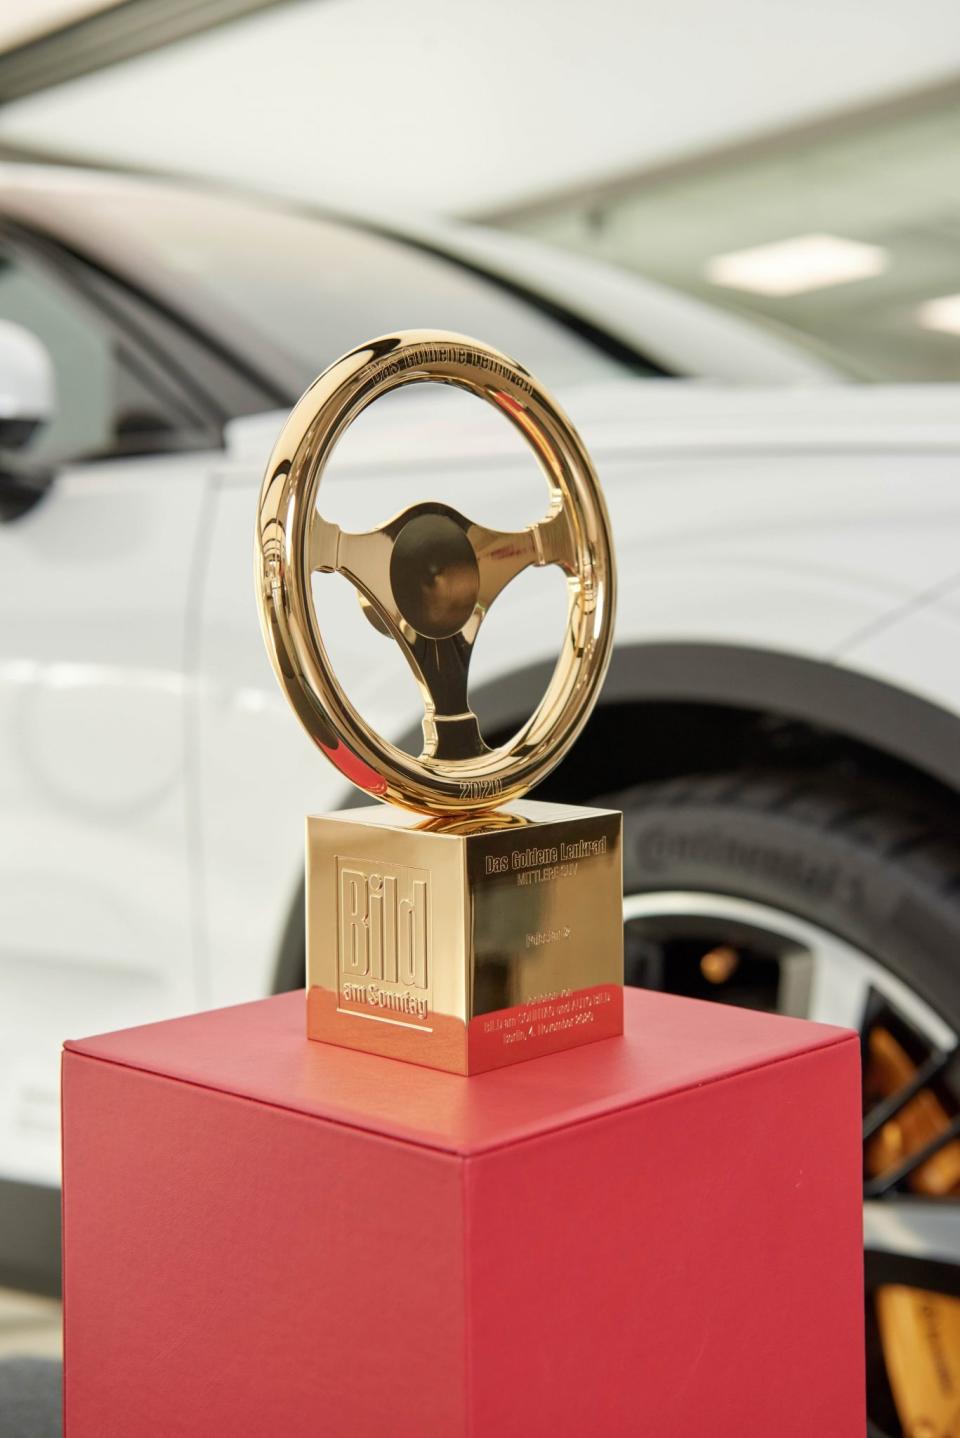 德國金舵獎，一個自1976年起就代表著汽車界最高榮譽的獎項。由AUTO BILD和BILD am SONNTAG共同創辦，這個獎項結合了專業評審和公眾投票，全面評估參賽車輛的性能、創新、安全及舒適度，是全球汽車製造商爭奪的榮譽象徵。